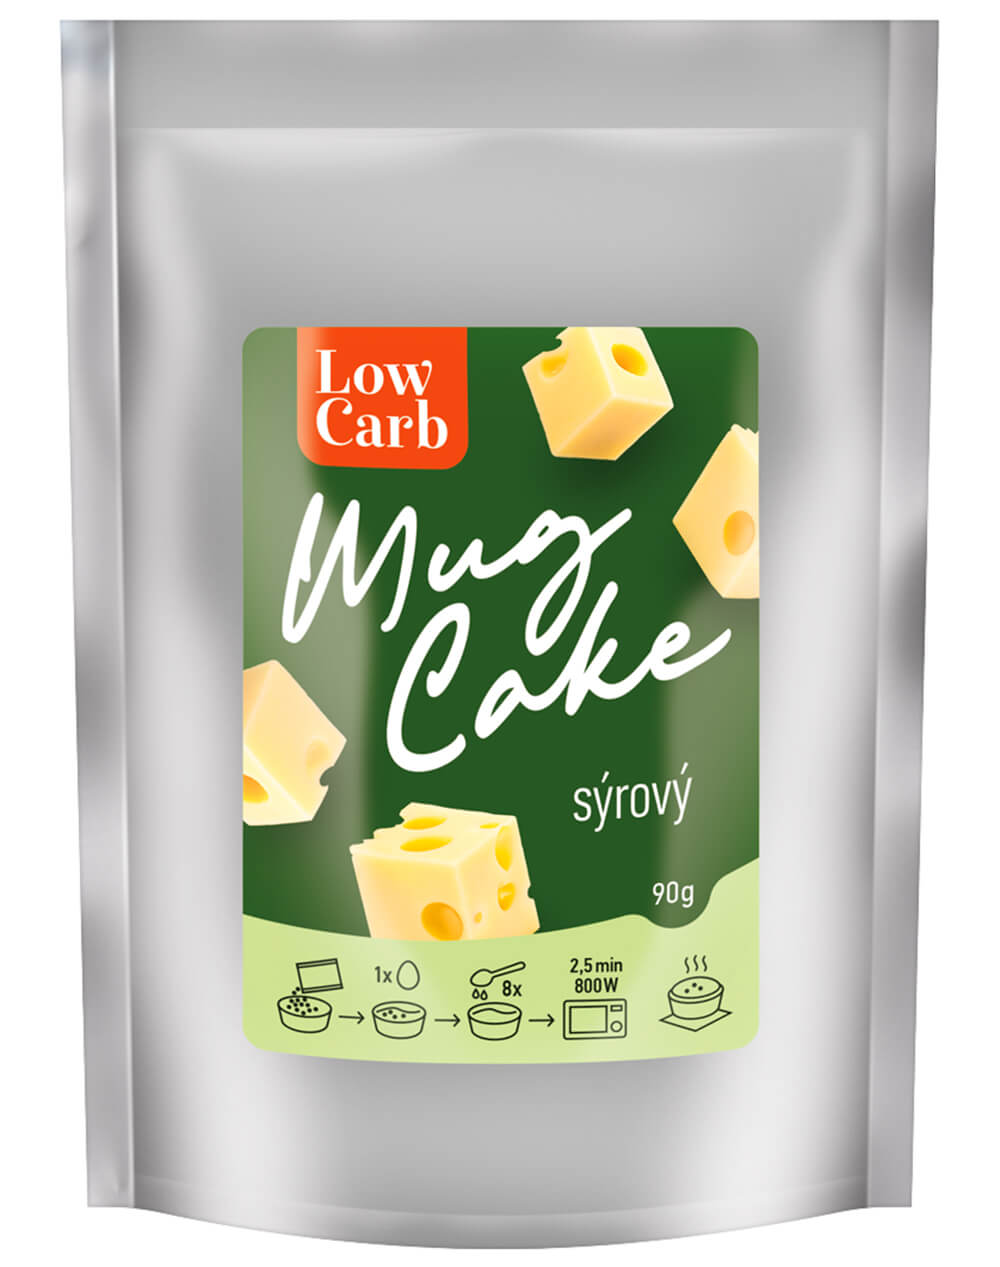 MKM Pack (DMT) Low carb mug cake sýrový 90g